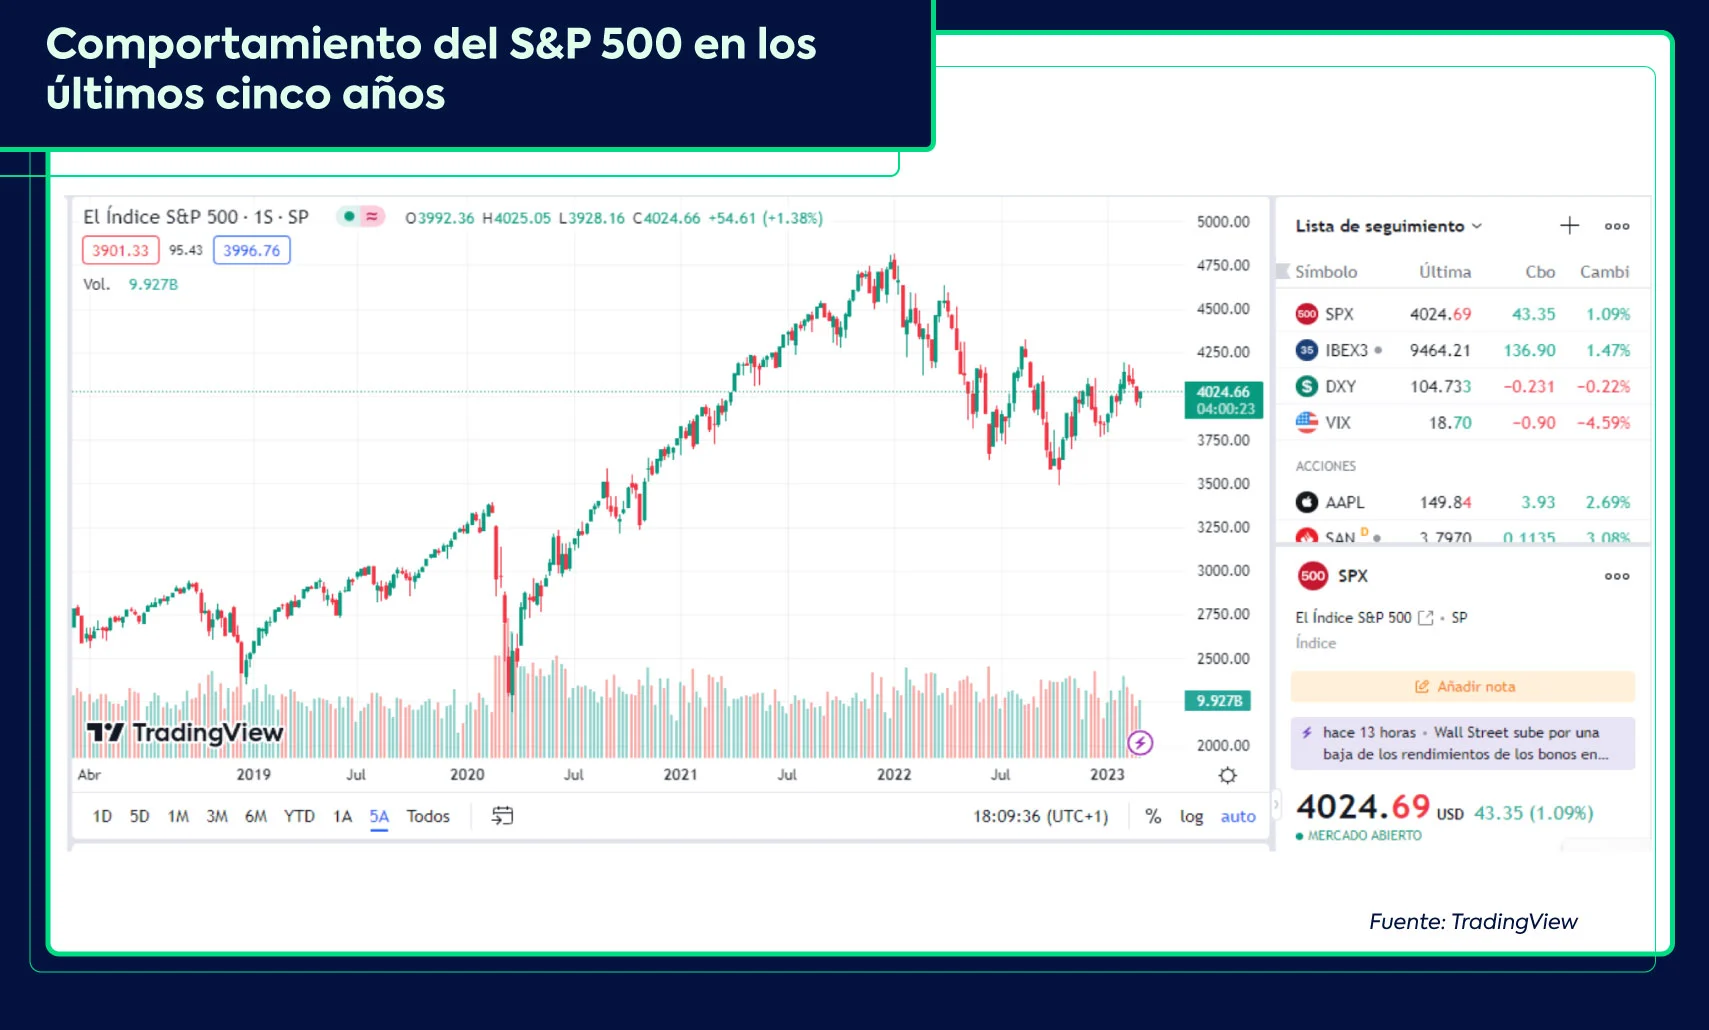 Mercados financieros y desempeño del S&P 500